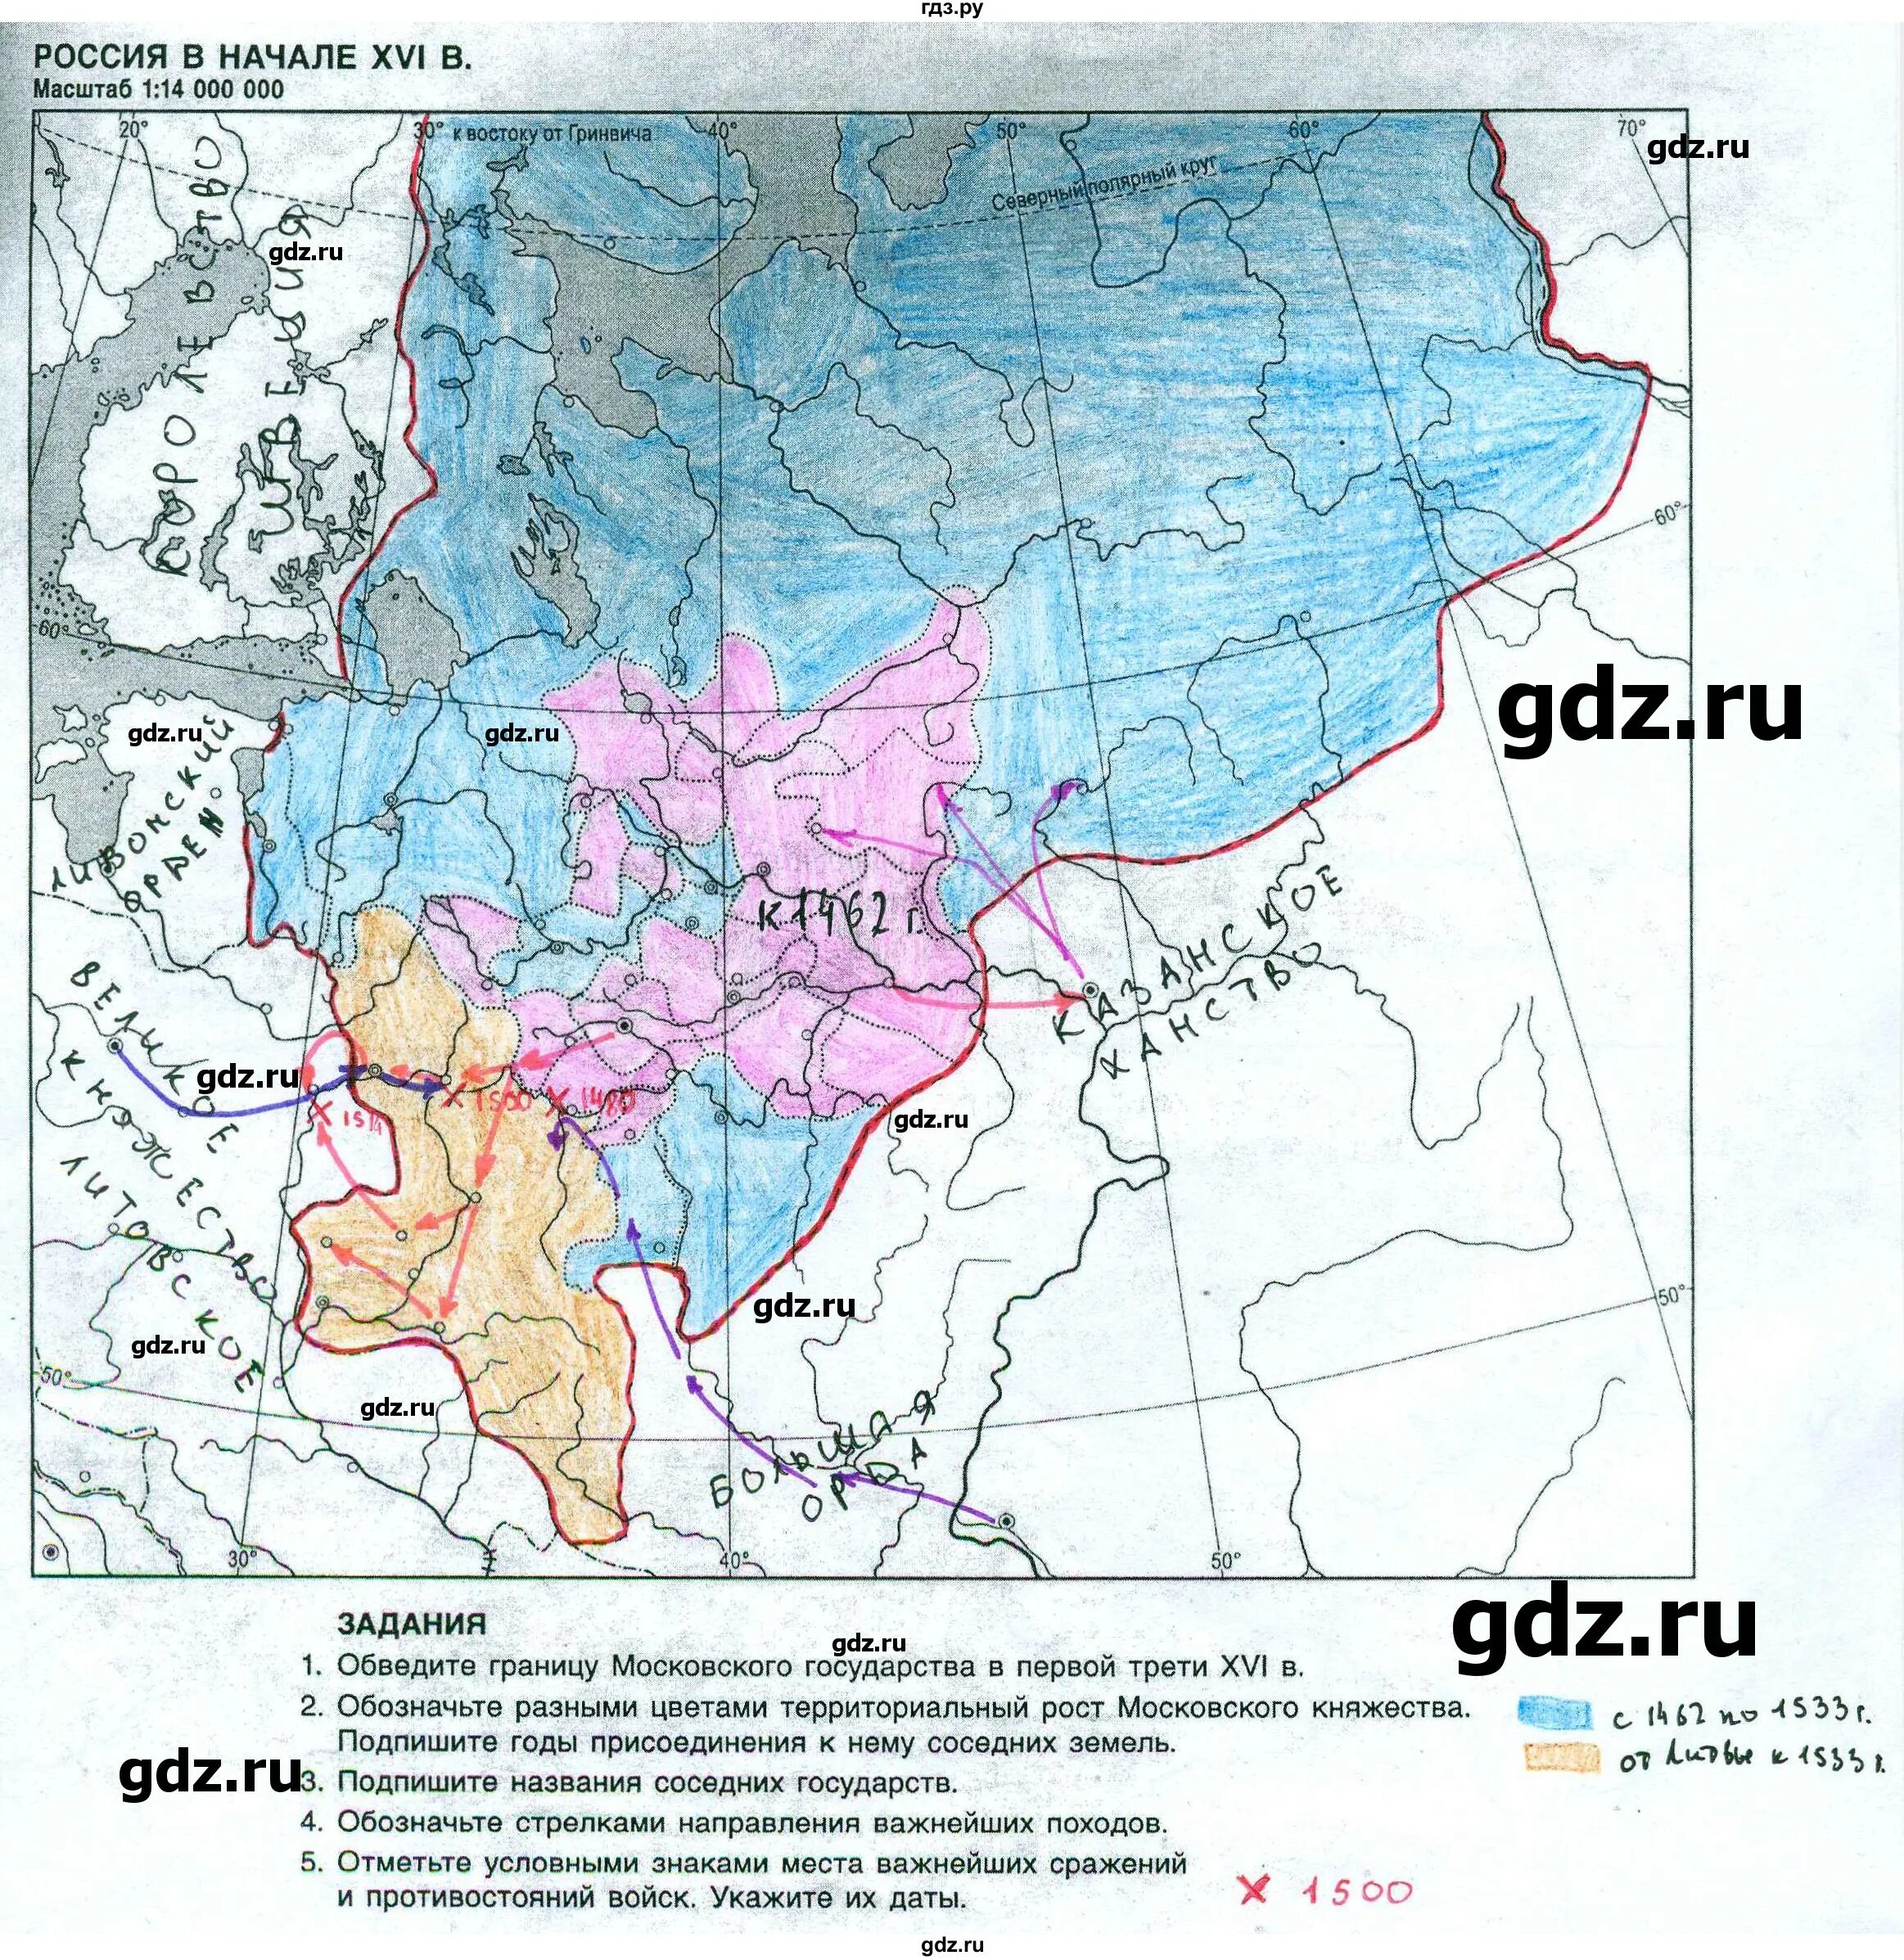 Усиление московского княжества 6 класс контурные карты